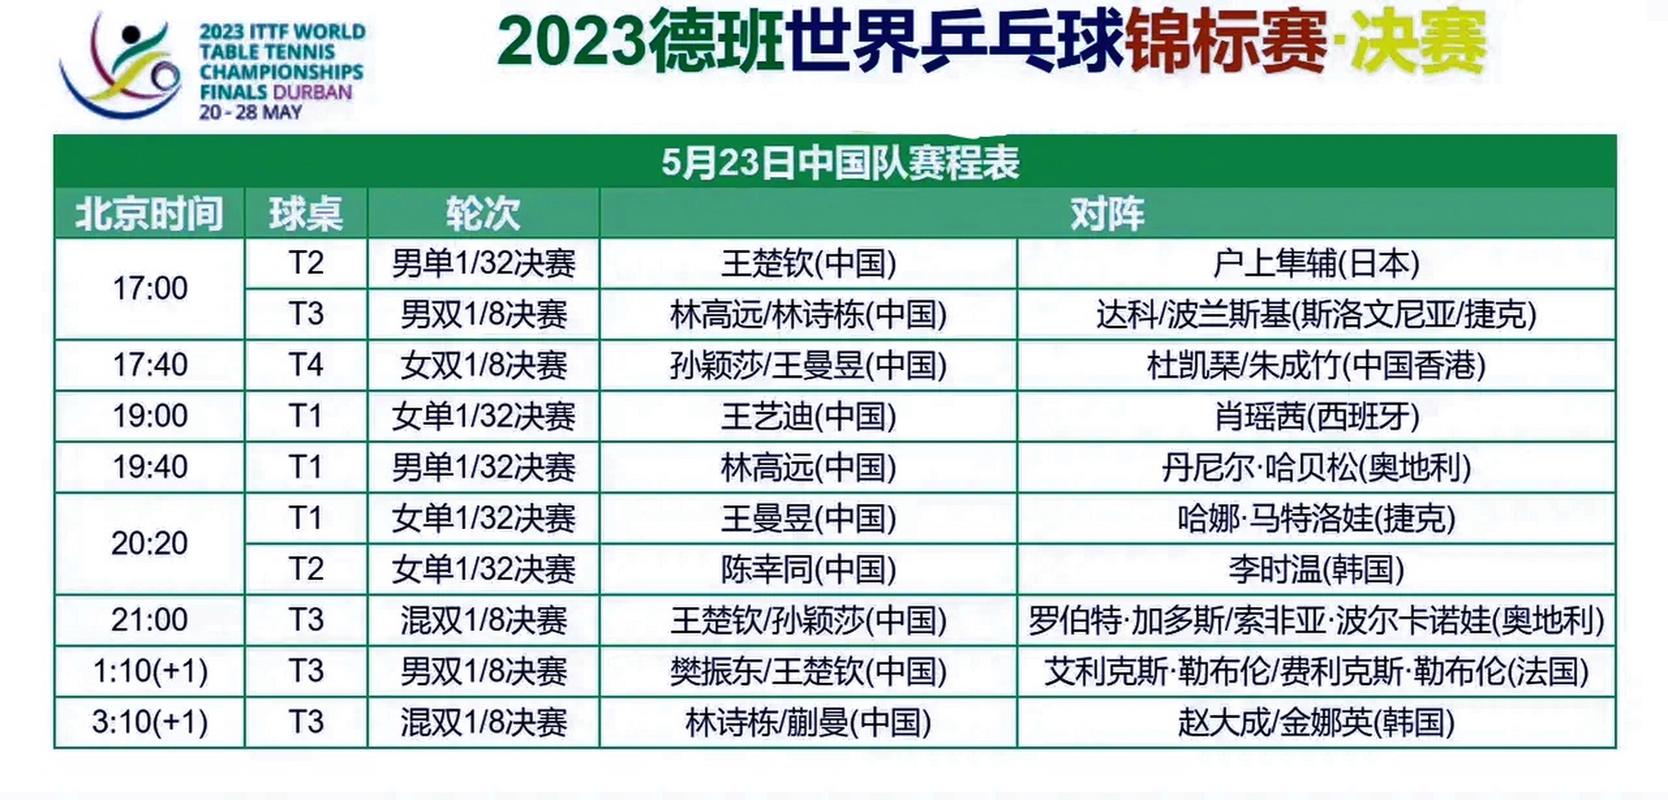 乒乓球世锦赛2022赛程